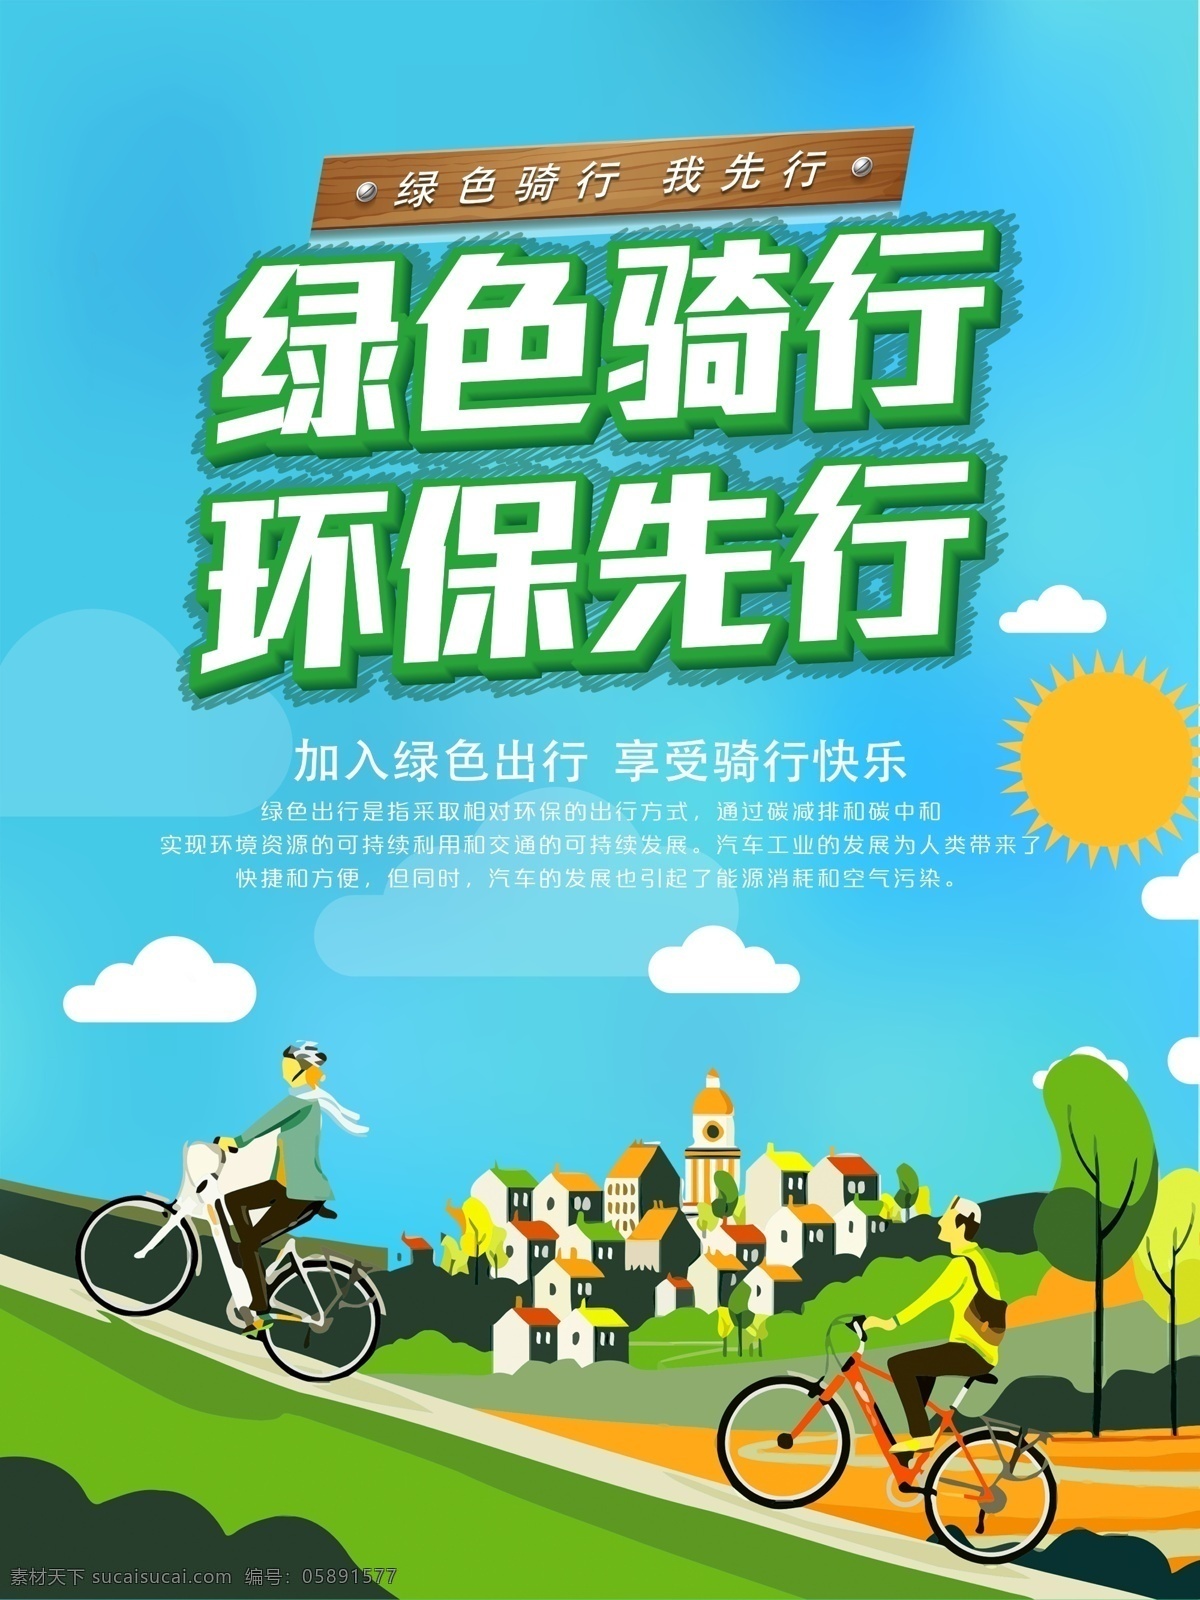 绿色 骑 行 环保 先行 公益 海报 清新 简约 骑行 绿色出行 自行车 低碳 节能减排 节能 环保节能 节能环保 绿色环保 保护环境 爱护地球 公交站牌